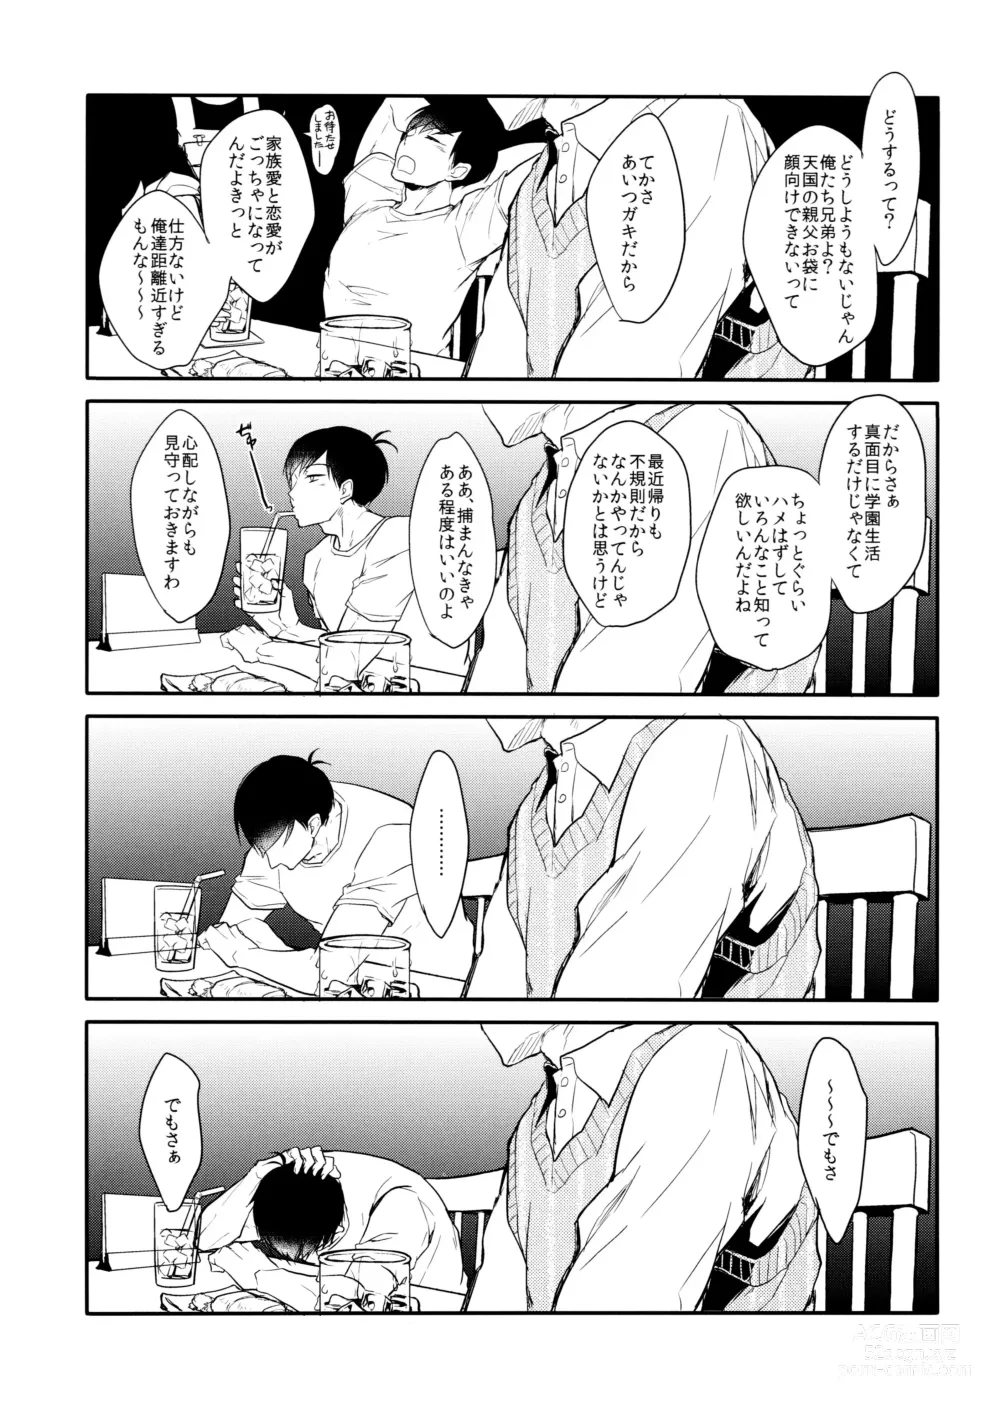 Page 38 of doujinshi Deinei no Sakana